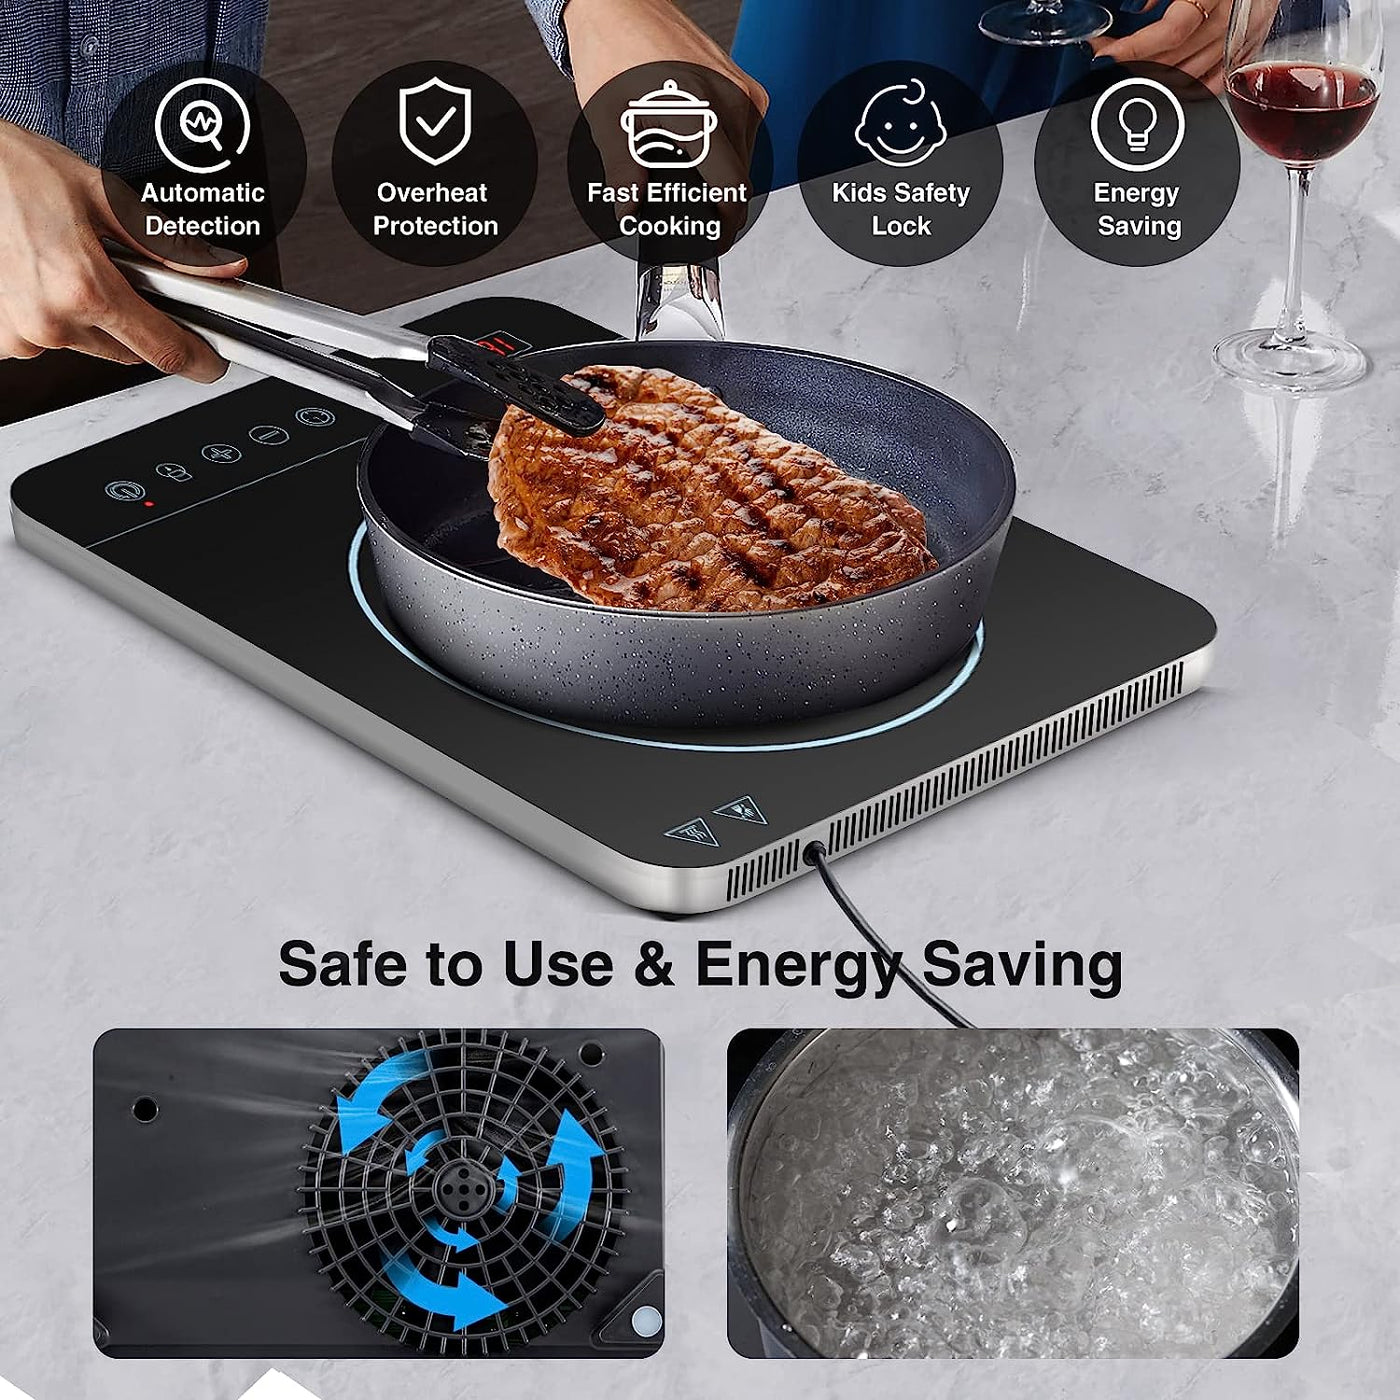  Energy saving cooktop, save to use